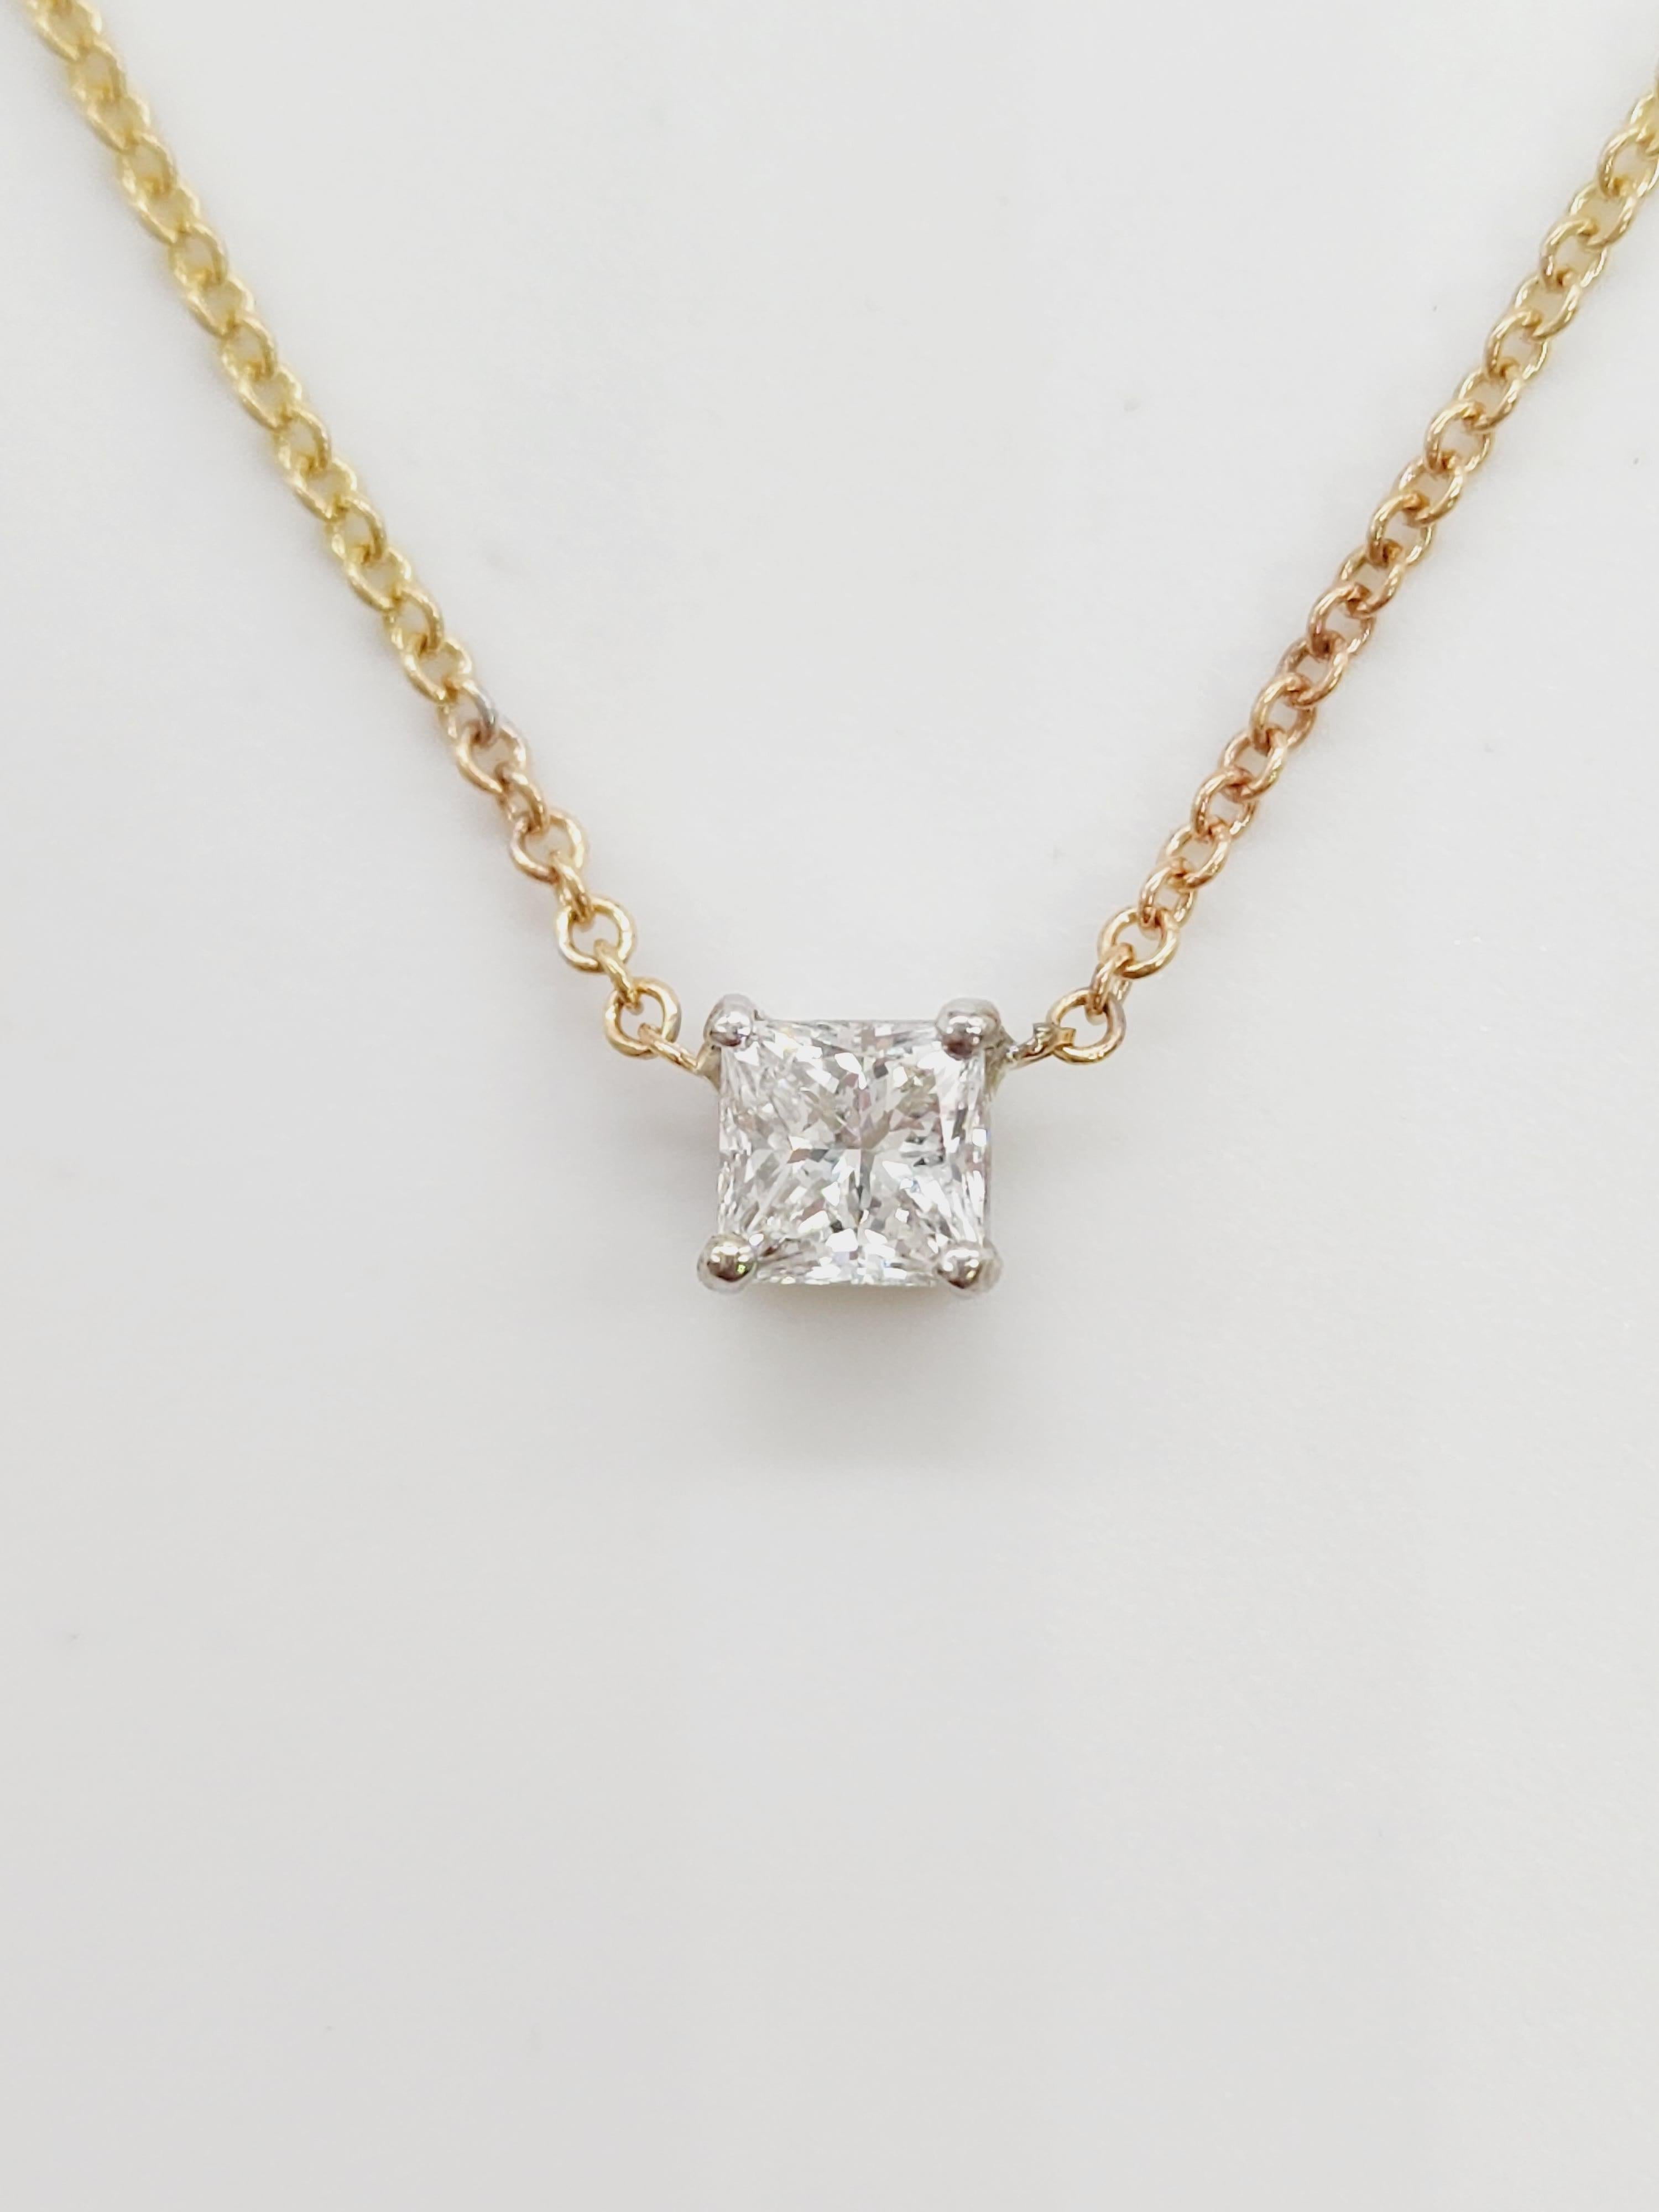 0.41 Pendentif en diamant naturel de forme princesse. Serti en or jaune 14k. serti à 4 griffes, la chaîne mesure 18 pouces.